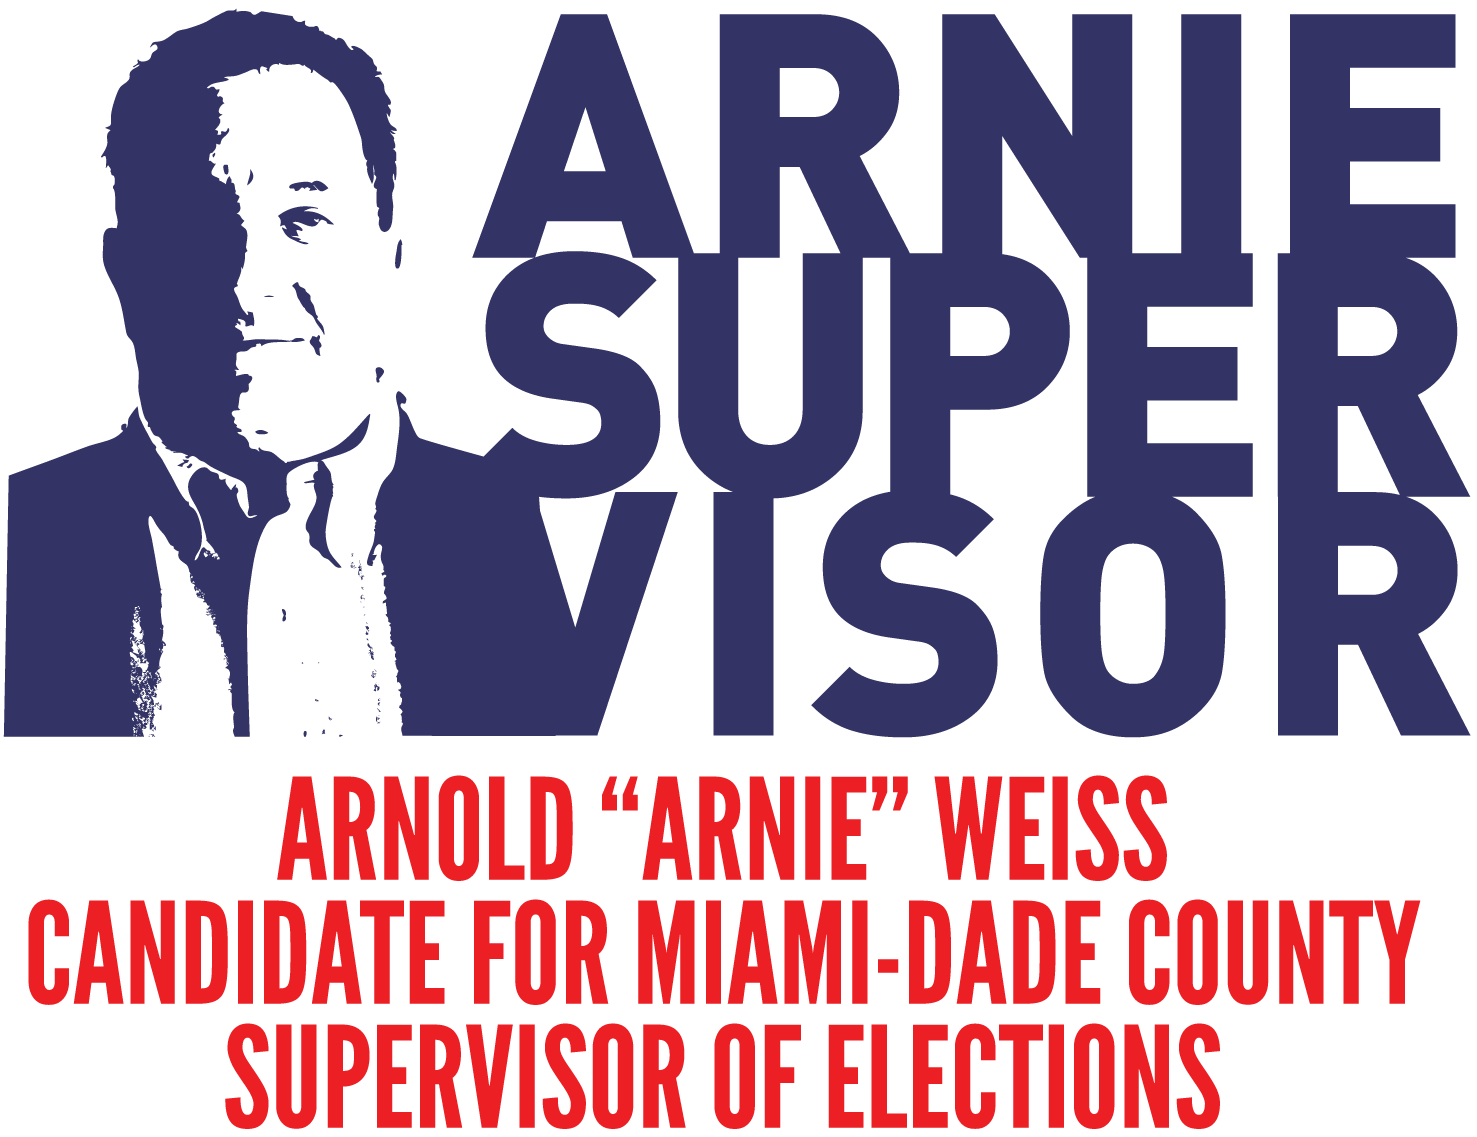 Arnold "Arnie" Weiss